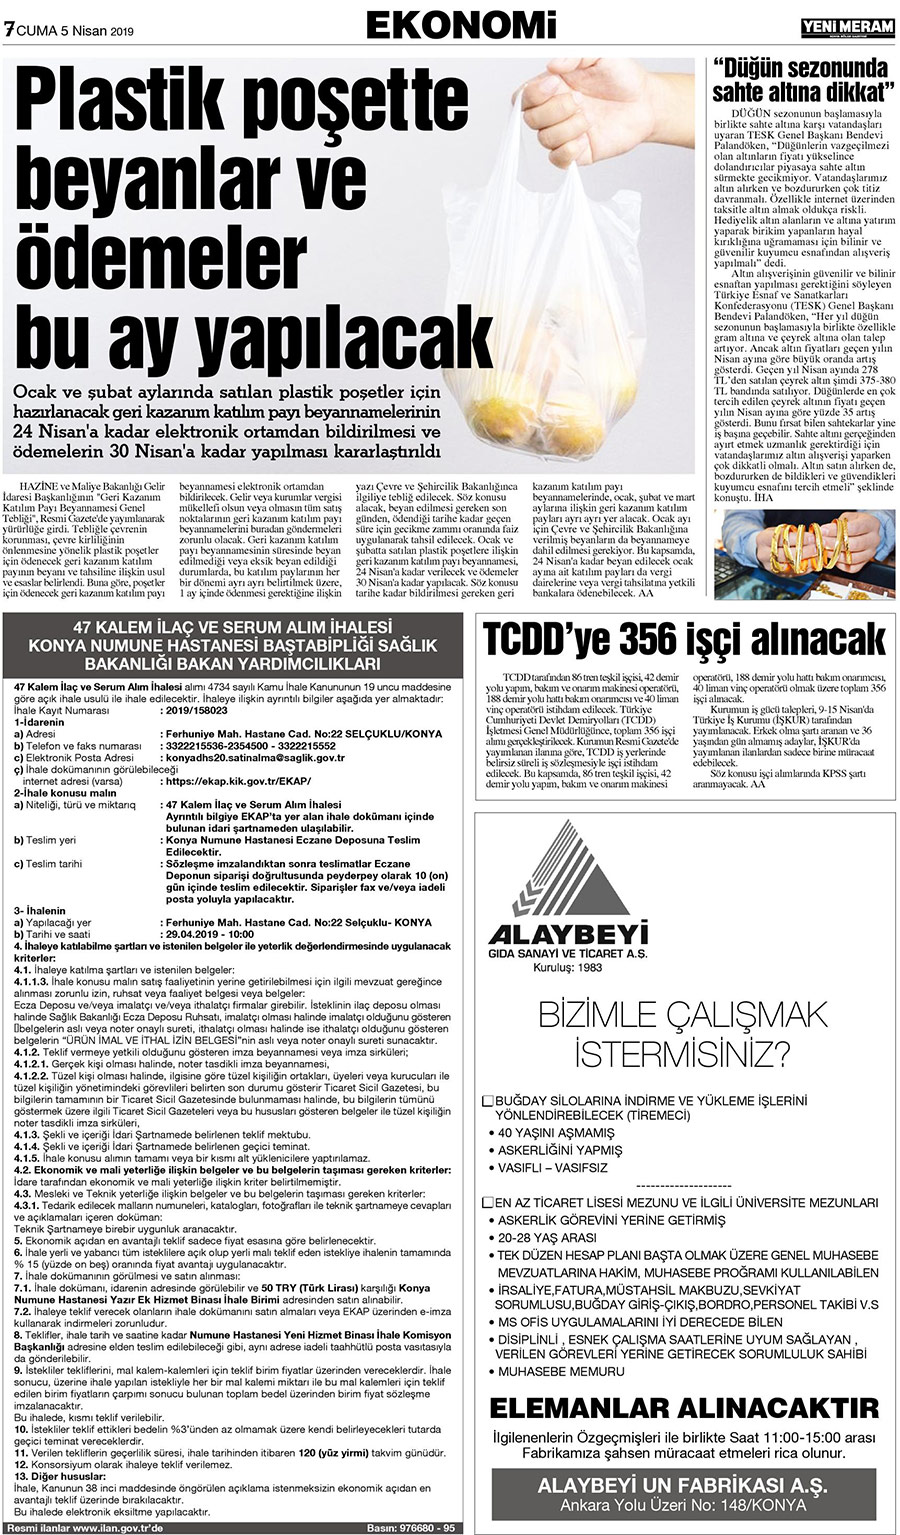 5 Nisan 2019 Yeni Meram Gazetesi